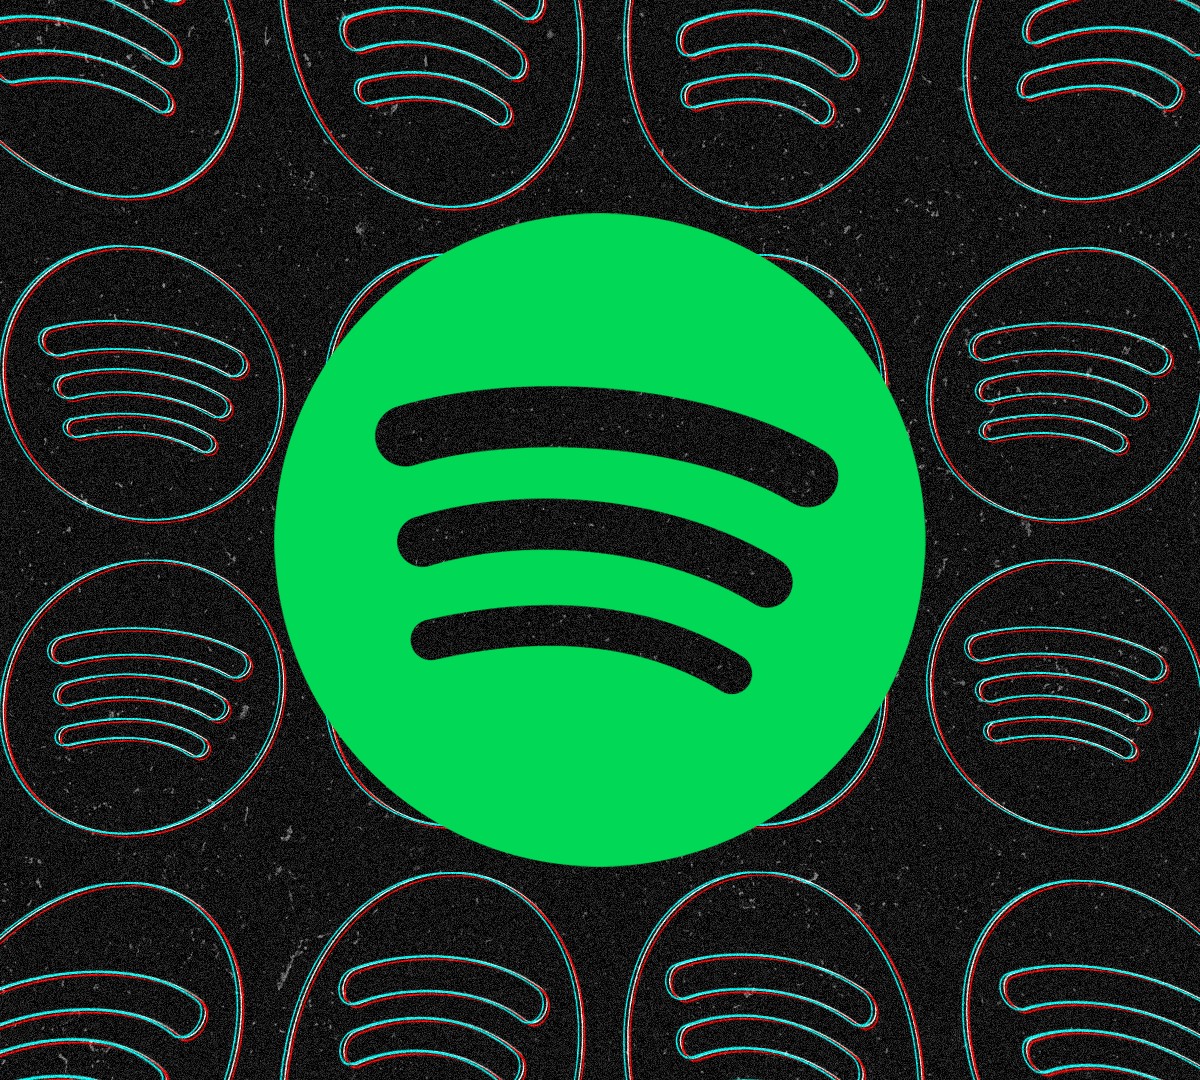 Retrospectiva Spotify 2023: Os artistas, as músicas e os gêneros  brasileiros mais escutados no exterior